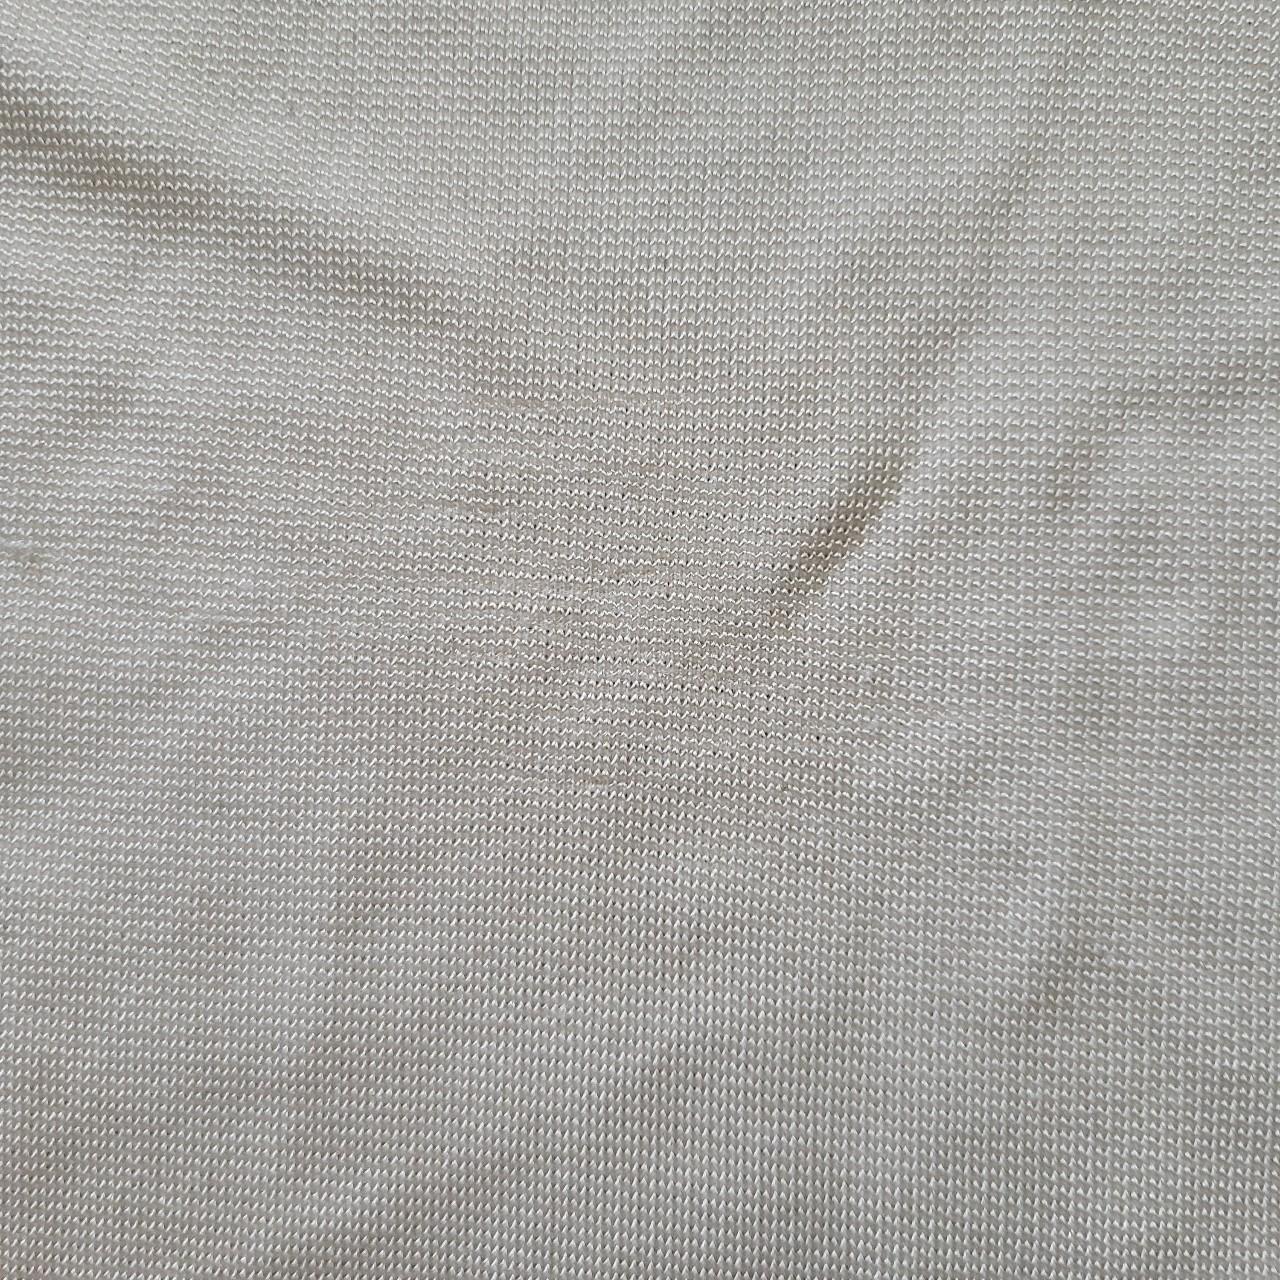 Djerf Avenue Women's White and Cream Shirt (5)